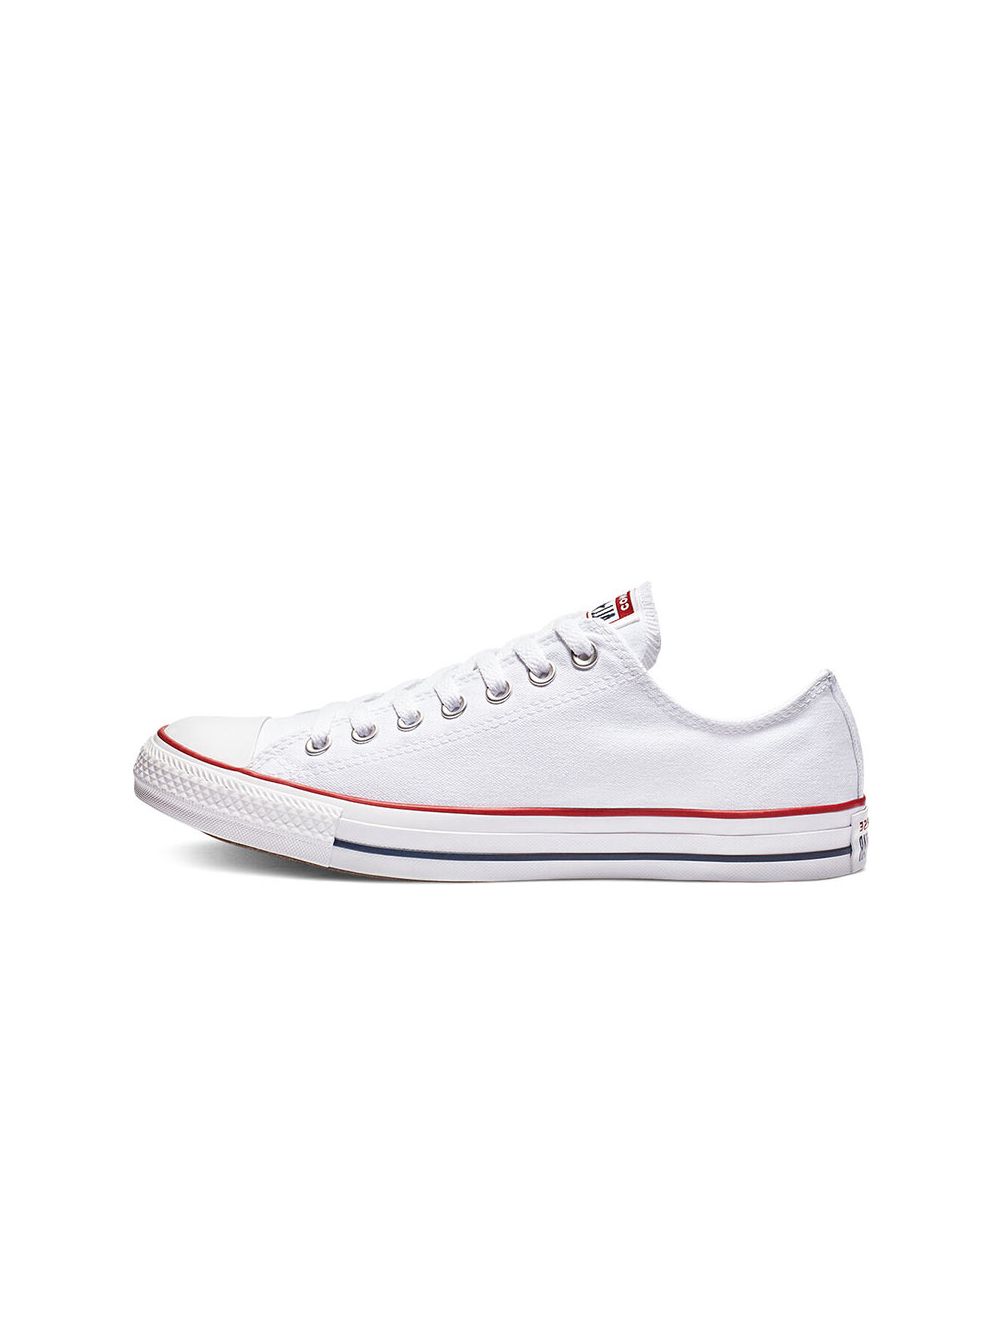 Shop Converse All Star Canvas Mens Sneaker White | Studio 88